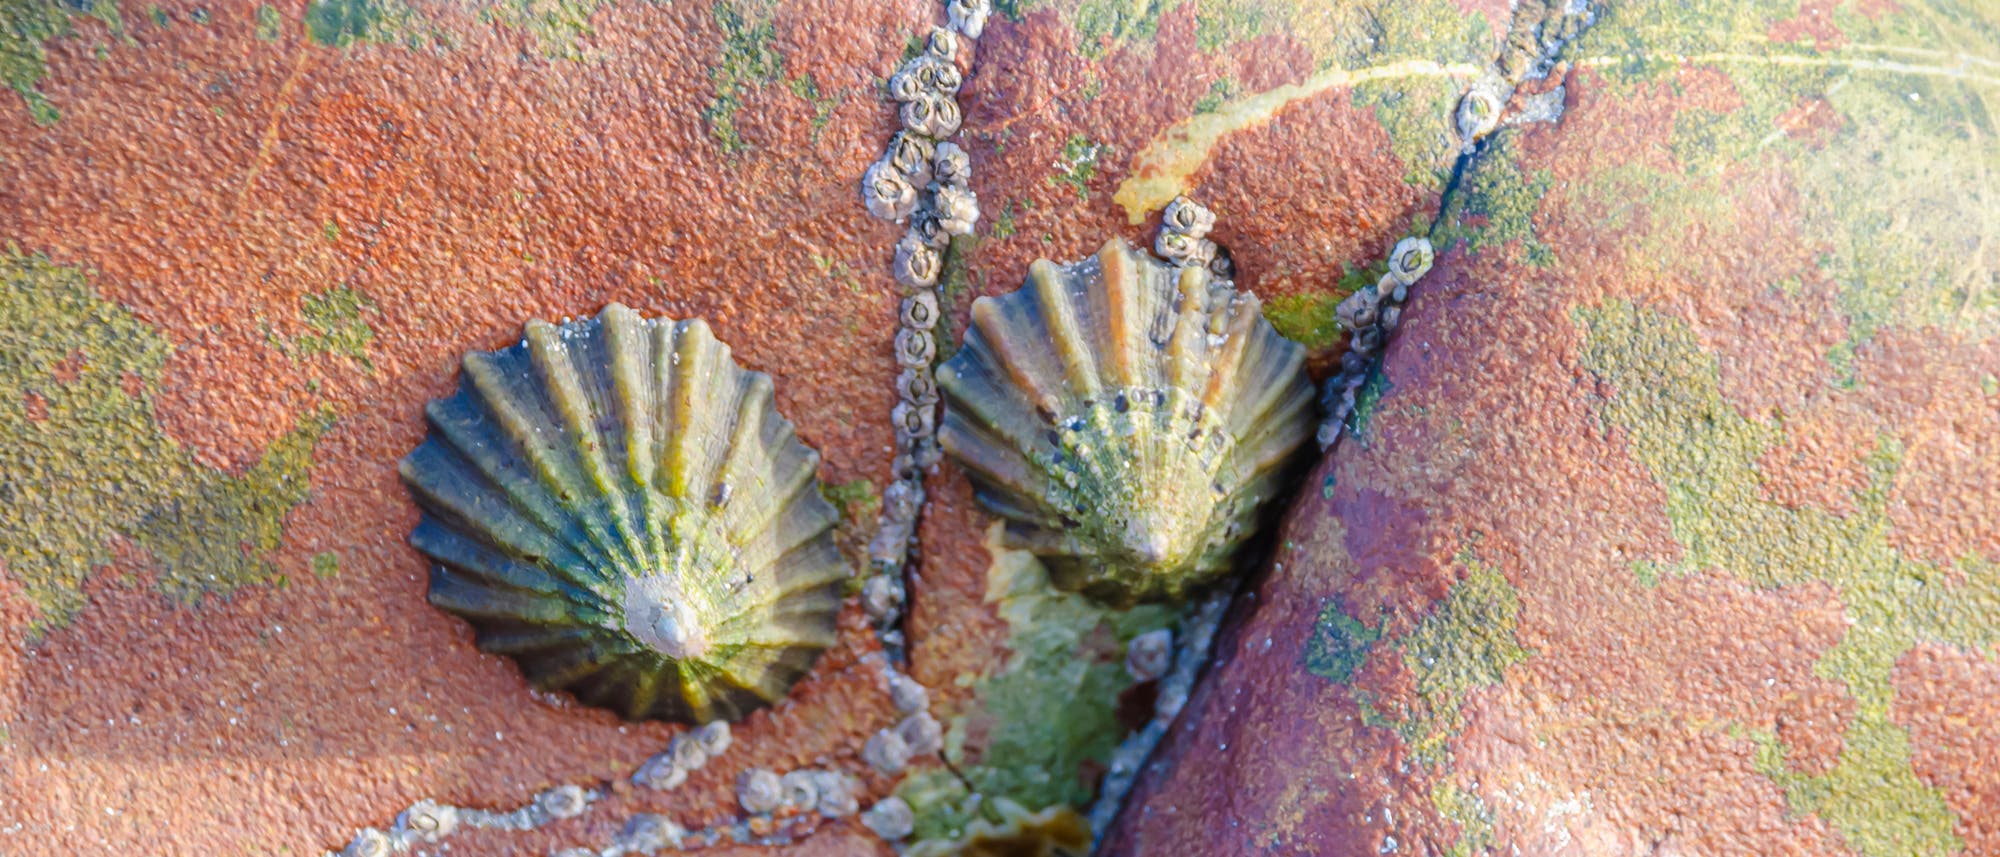 Zwei Napfschnecken der Art Paella vulgata haften samt Gefolge aus Seepocken an einem Felsen.